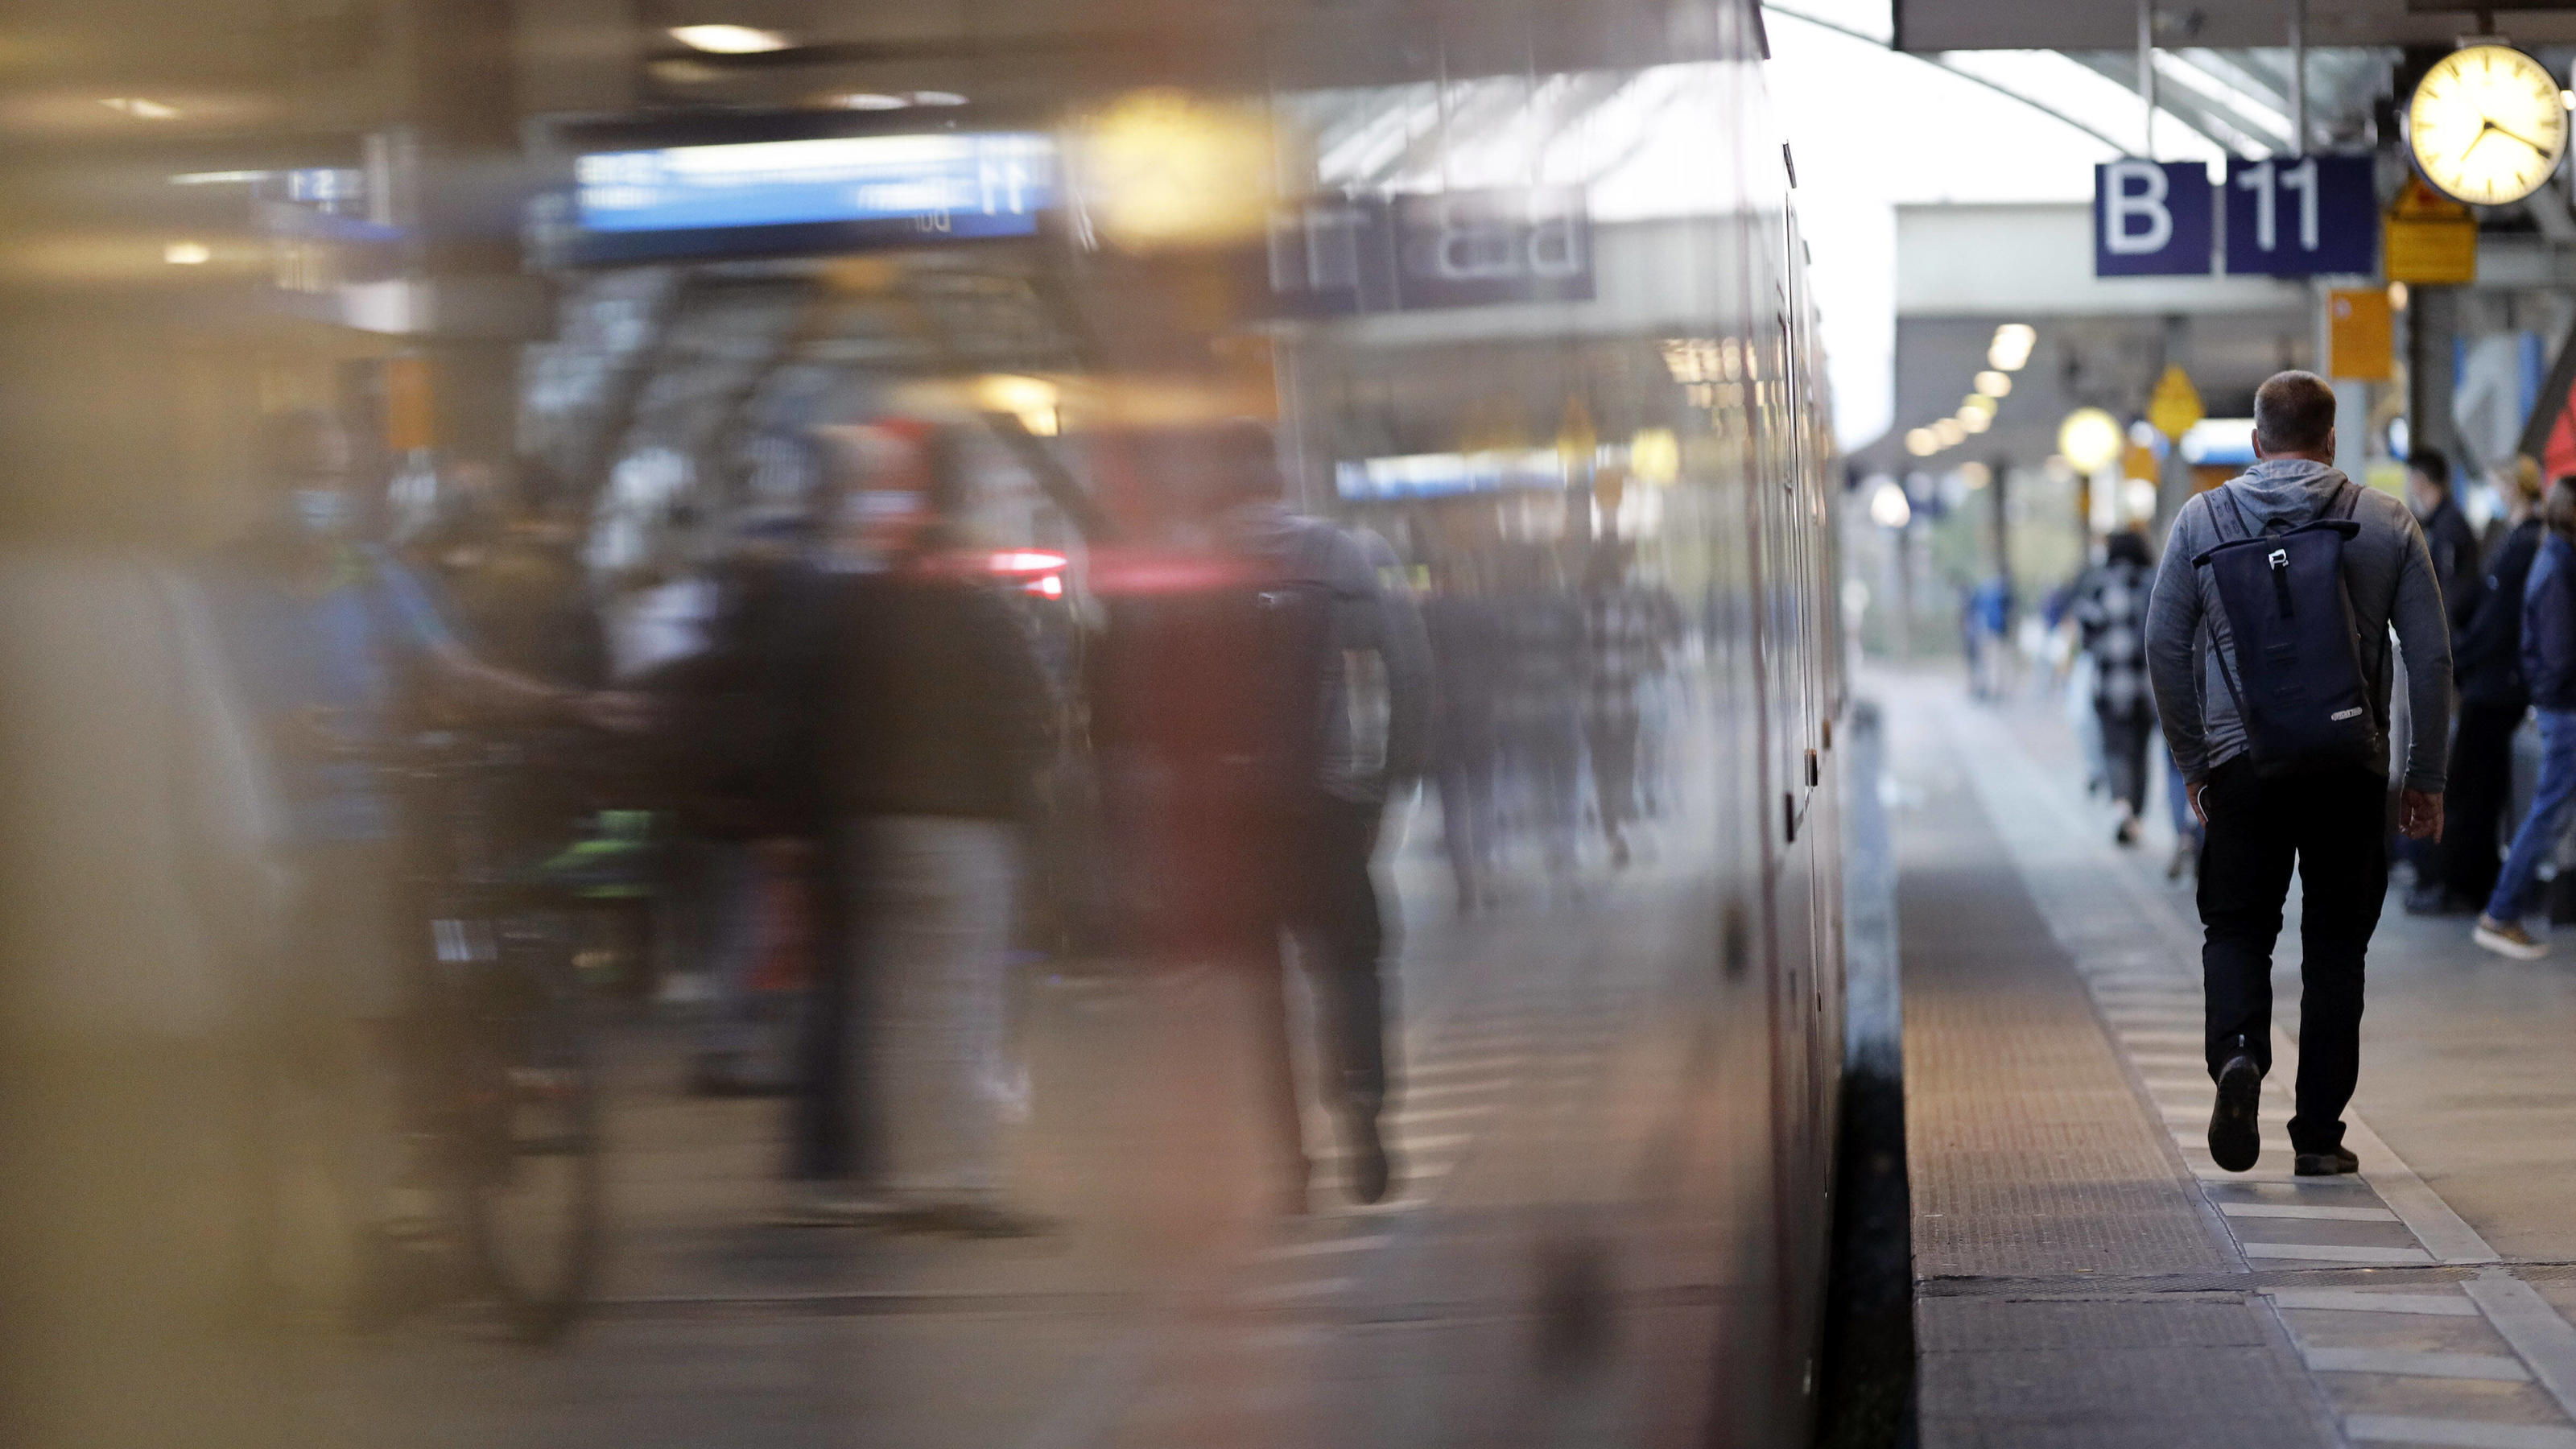 Eine S-Bahn der Deutschen Bahn auf einem Gleis im KÃ¶lner Hauptbahnhof. Die LokfÃ¼hrergewerkschaft GDL scheitert zuletzt mit einer Klage gegen die Tarifeinheit im Konzern. Themenbild, Symbolbild KÃ¶ln, 22.09.2021 *** A Deutsche Bahn S-Bahn train on a